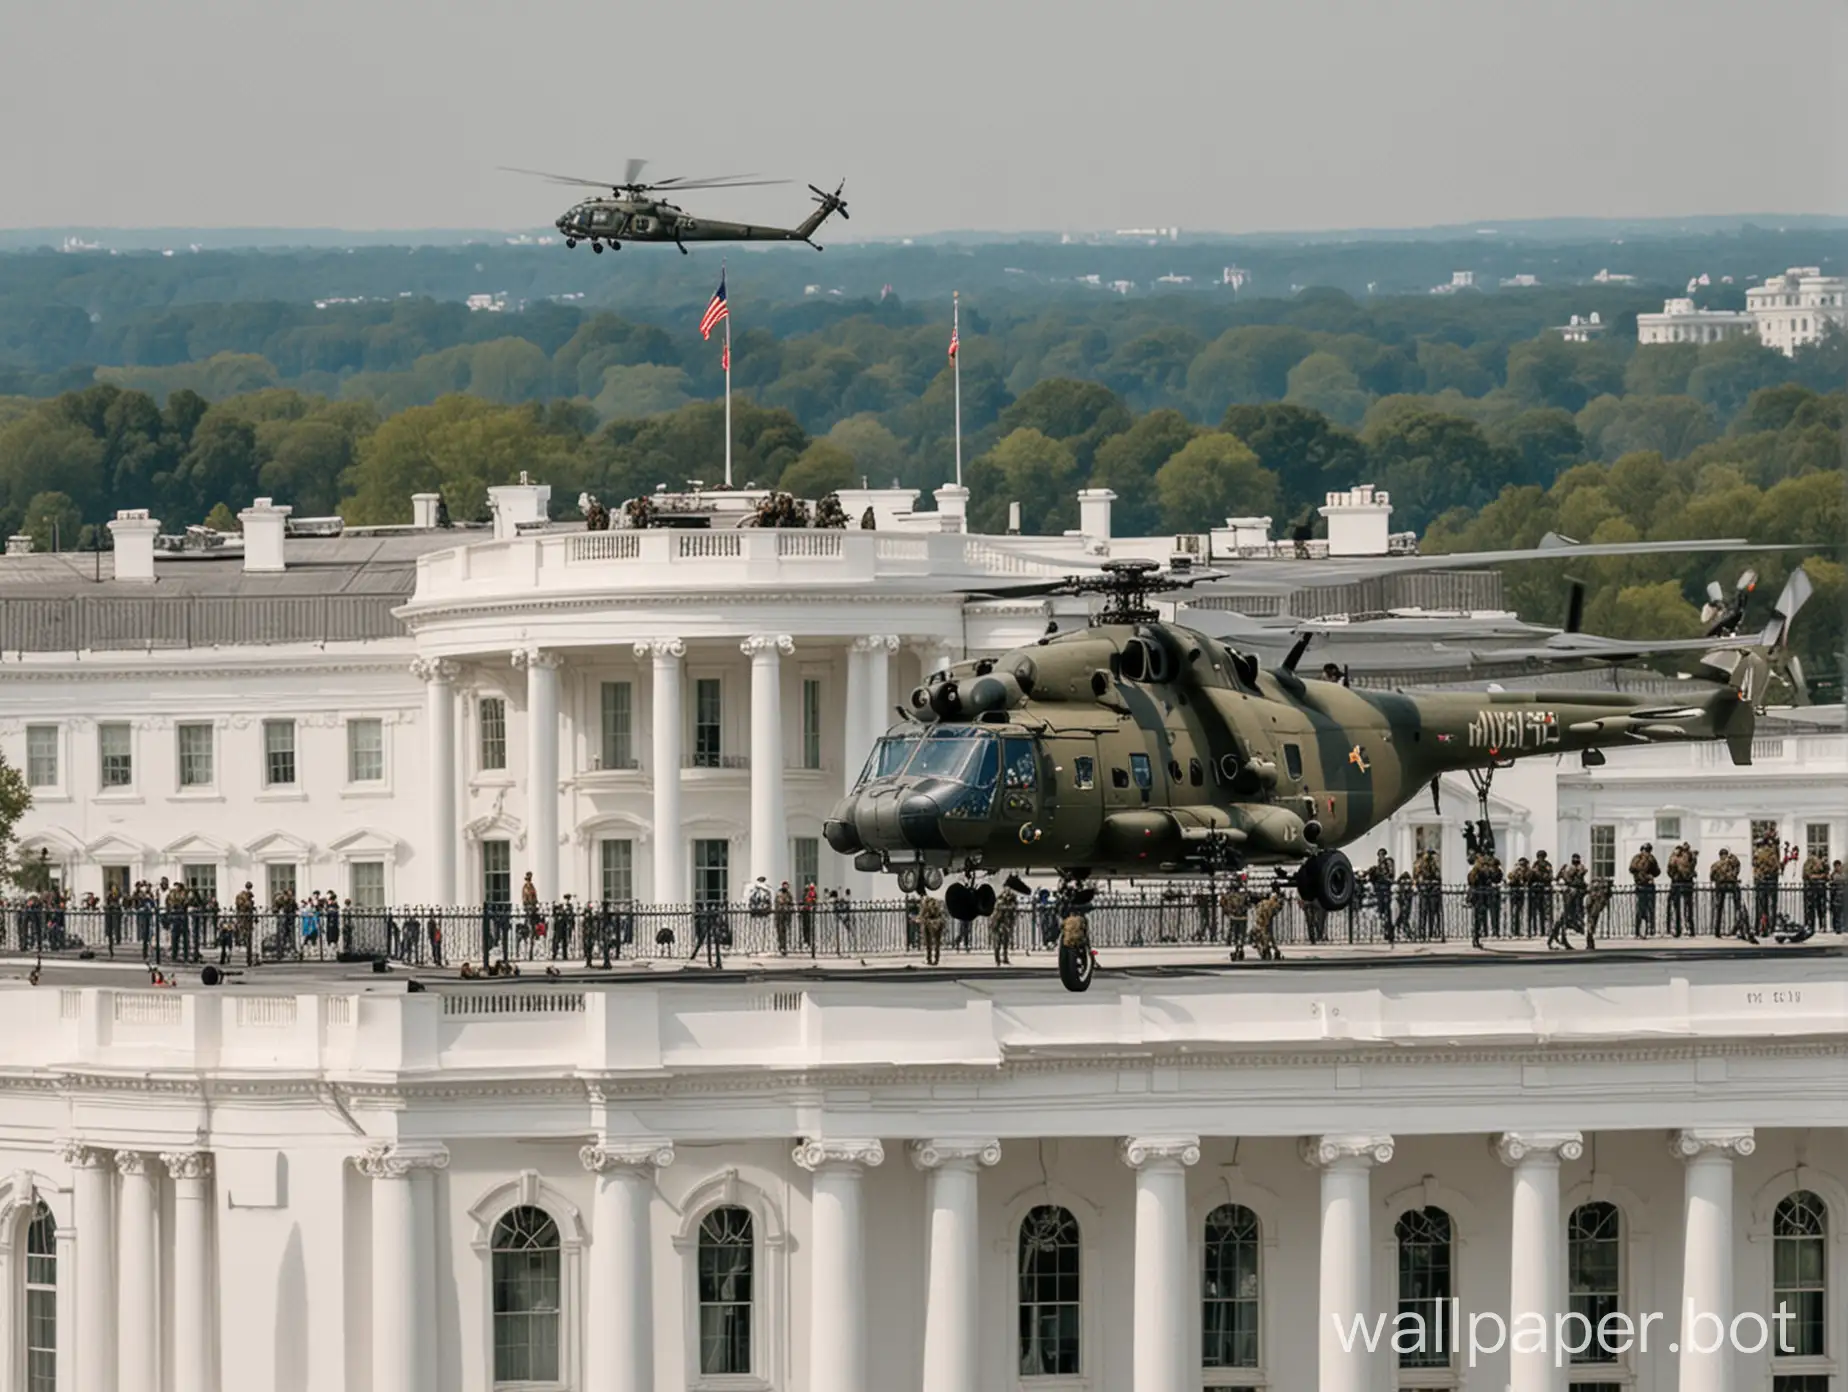 вертолет ми-8 высаживает десант солдат на крышу Белого дома в Вашингтоне. ясный день